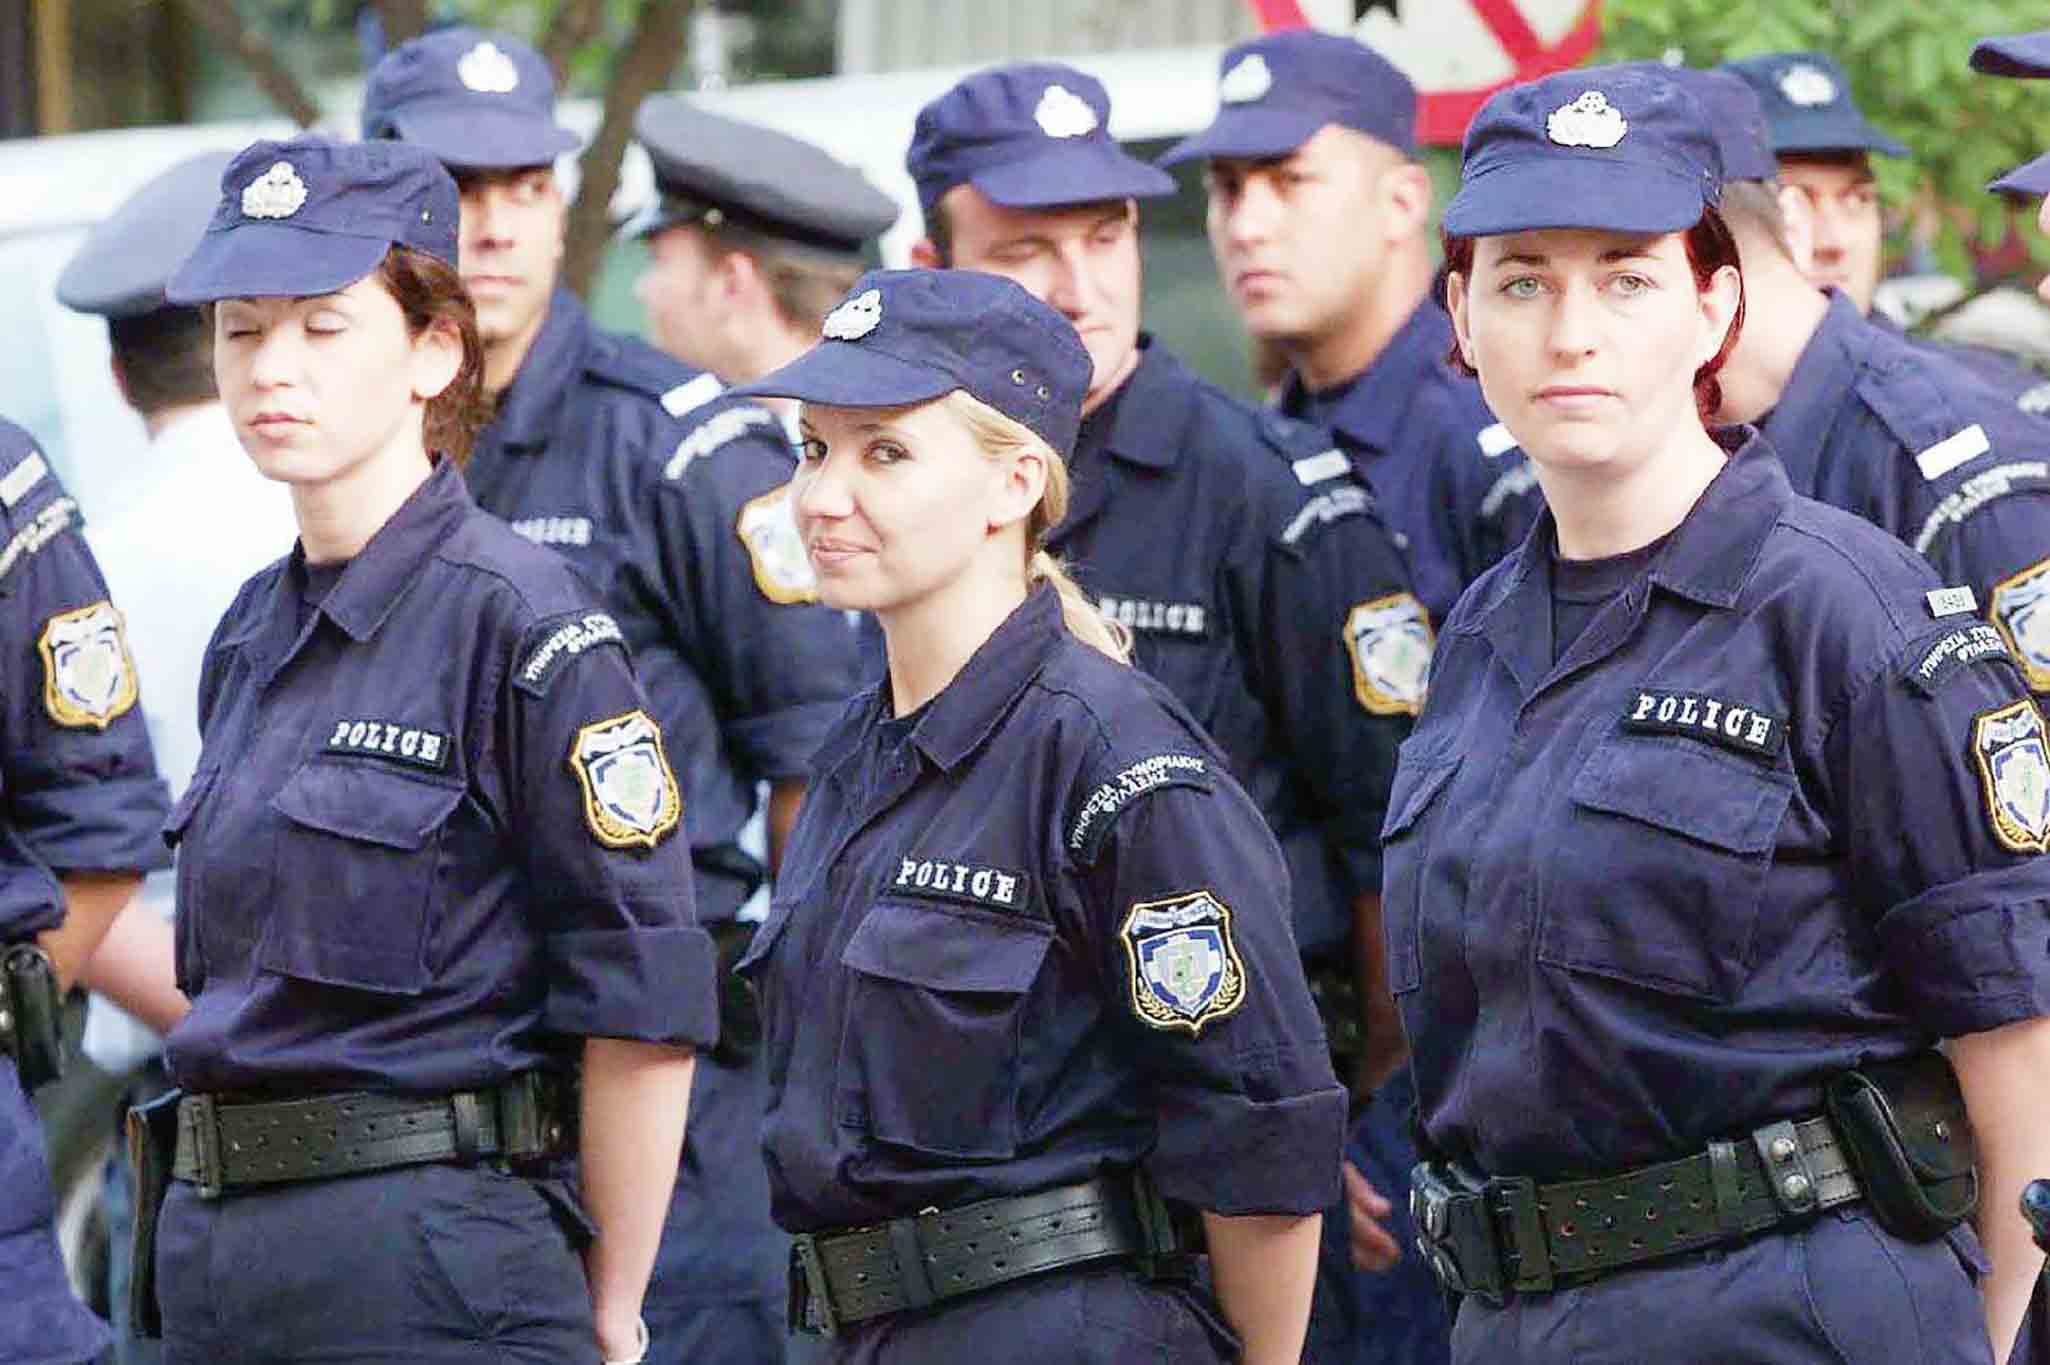 αστυνομία ύψος γυναίκες αθλητική προετοιμασία υποψήφιοι αγωνίσματα